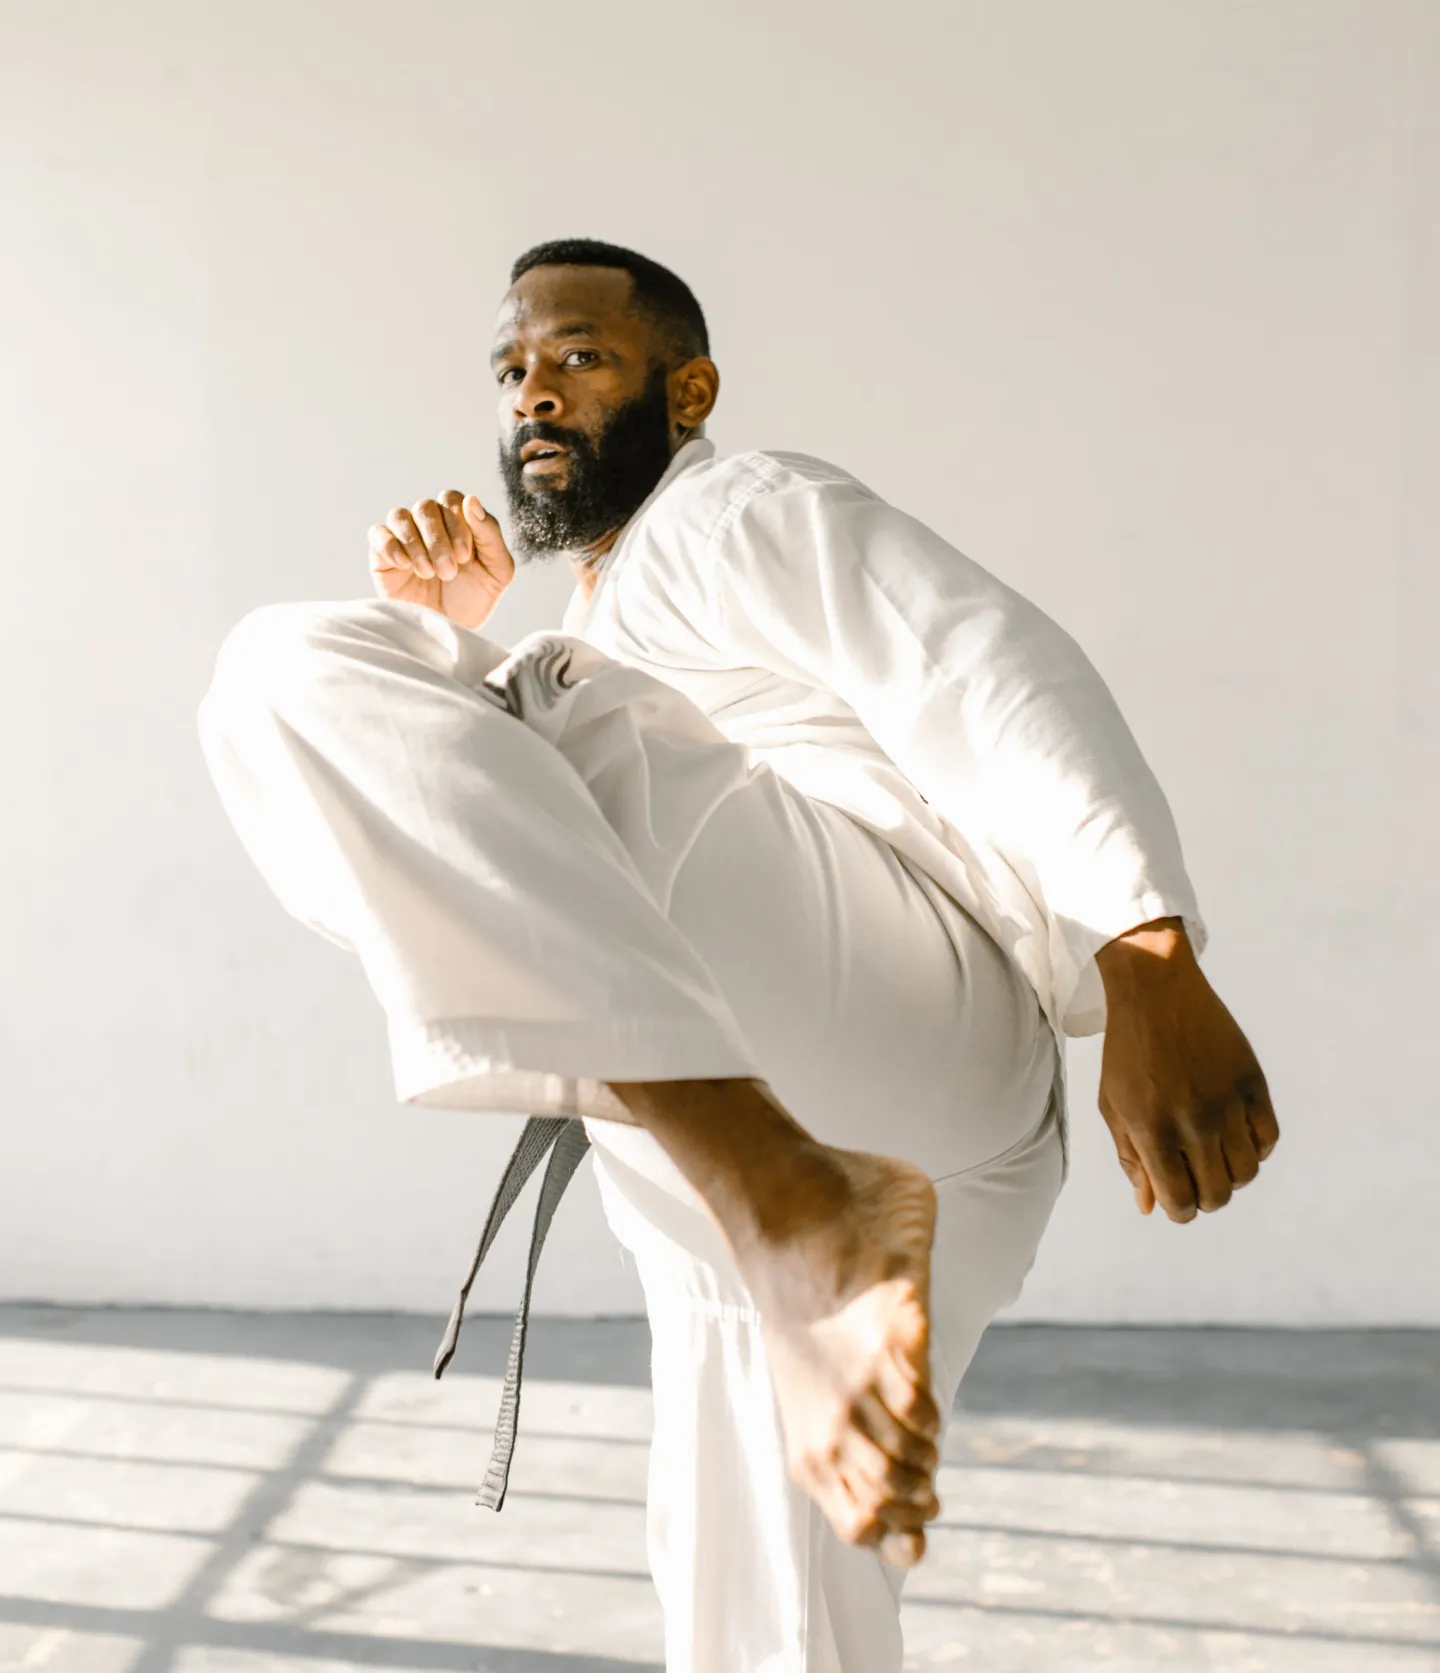 Karate Grundtechniken: 5 Tipps für ein effektives Training